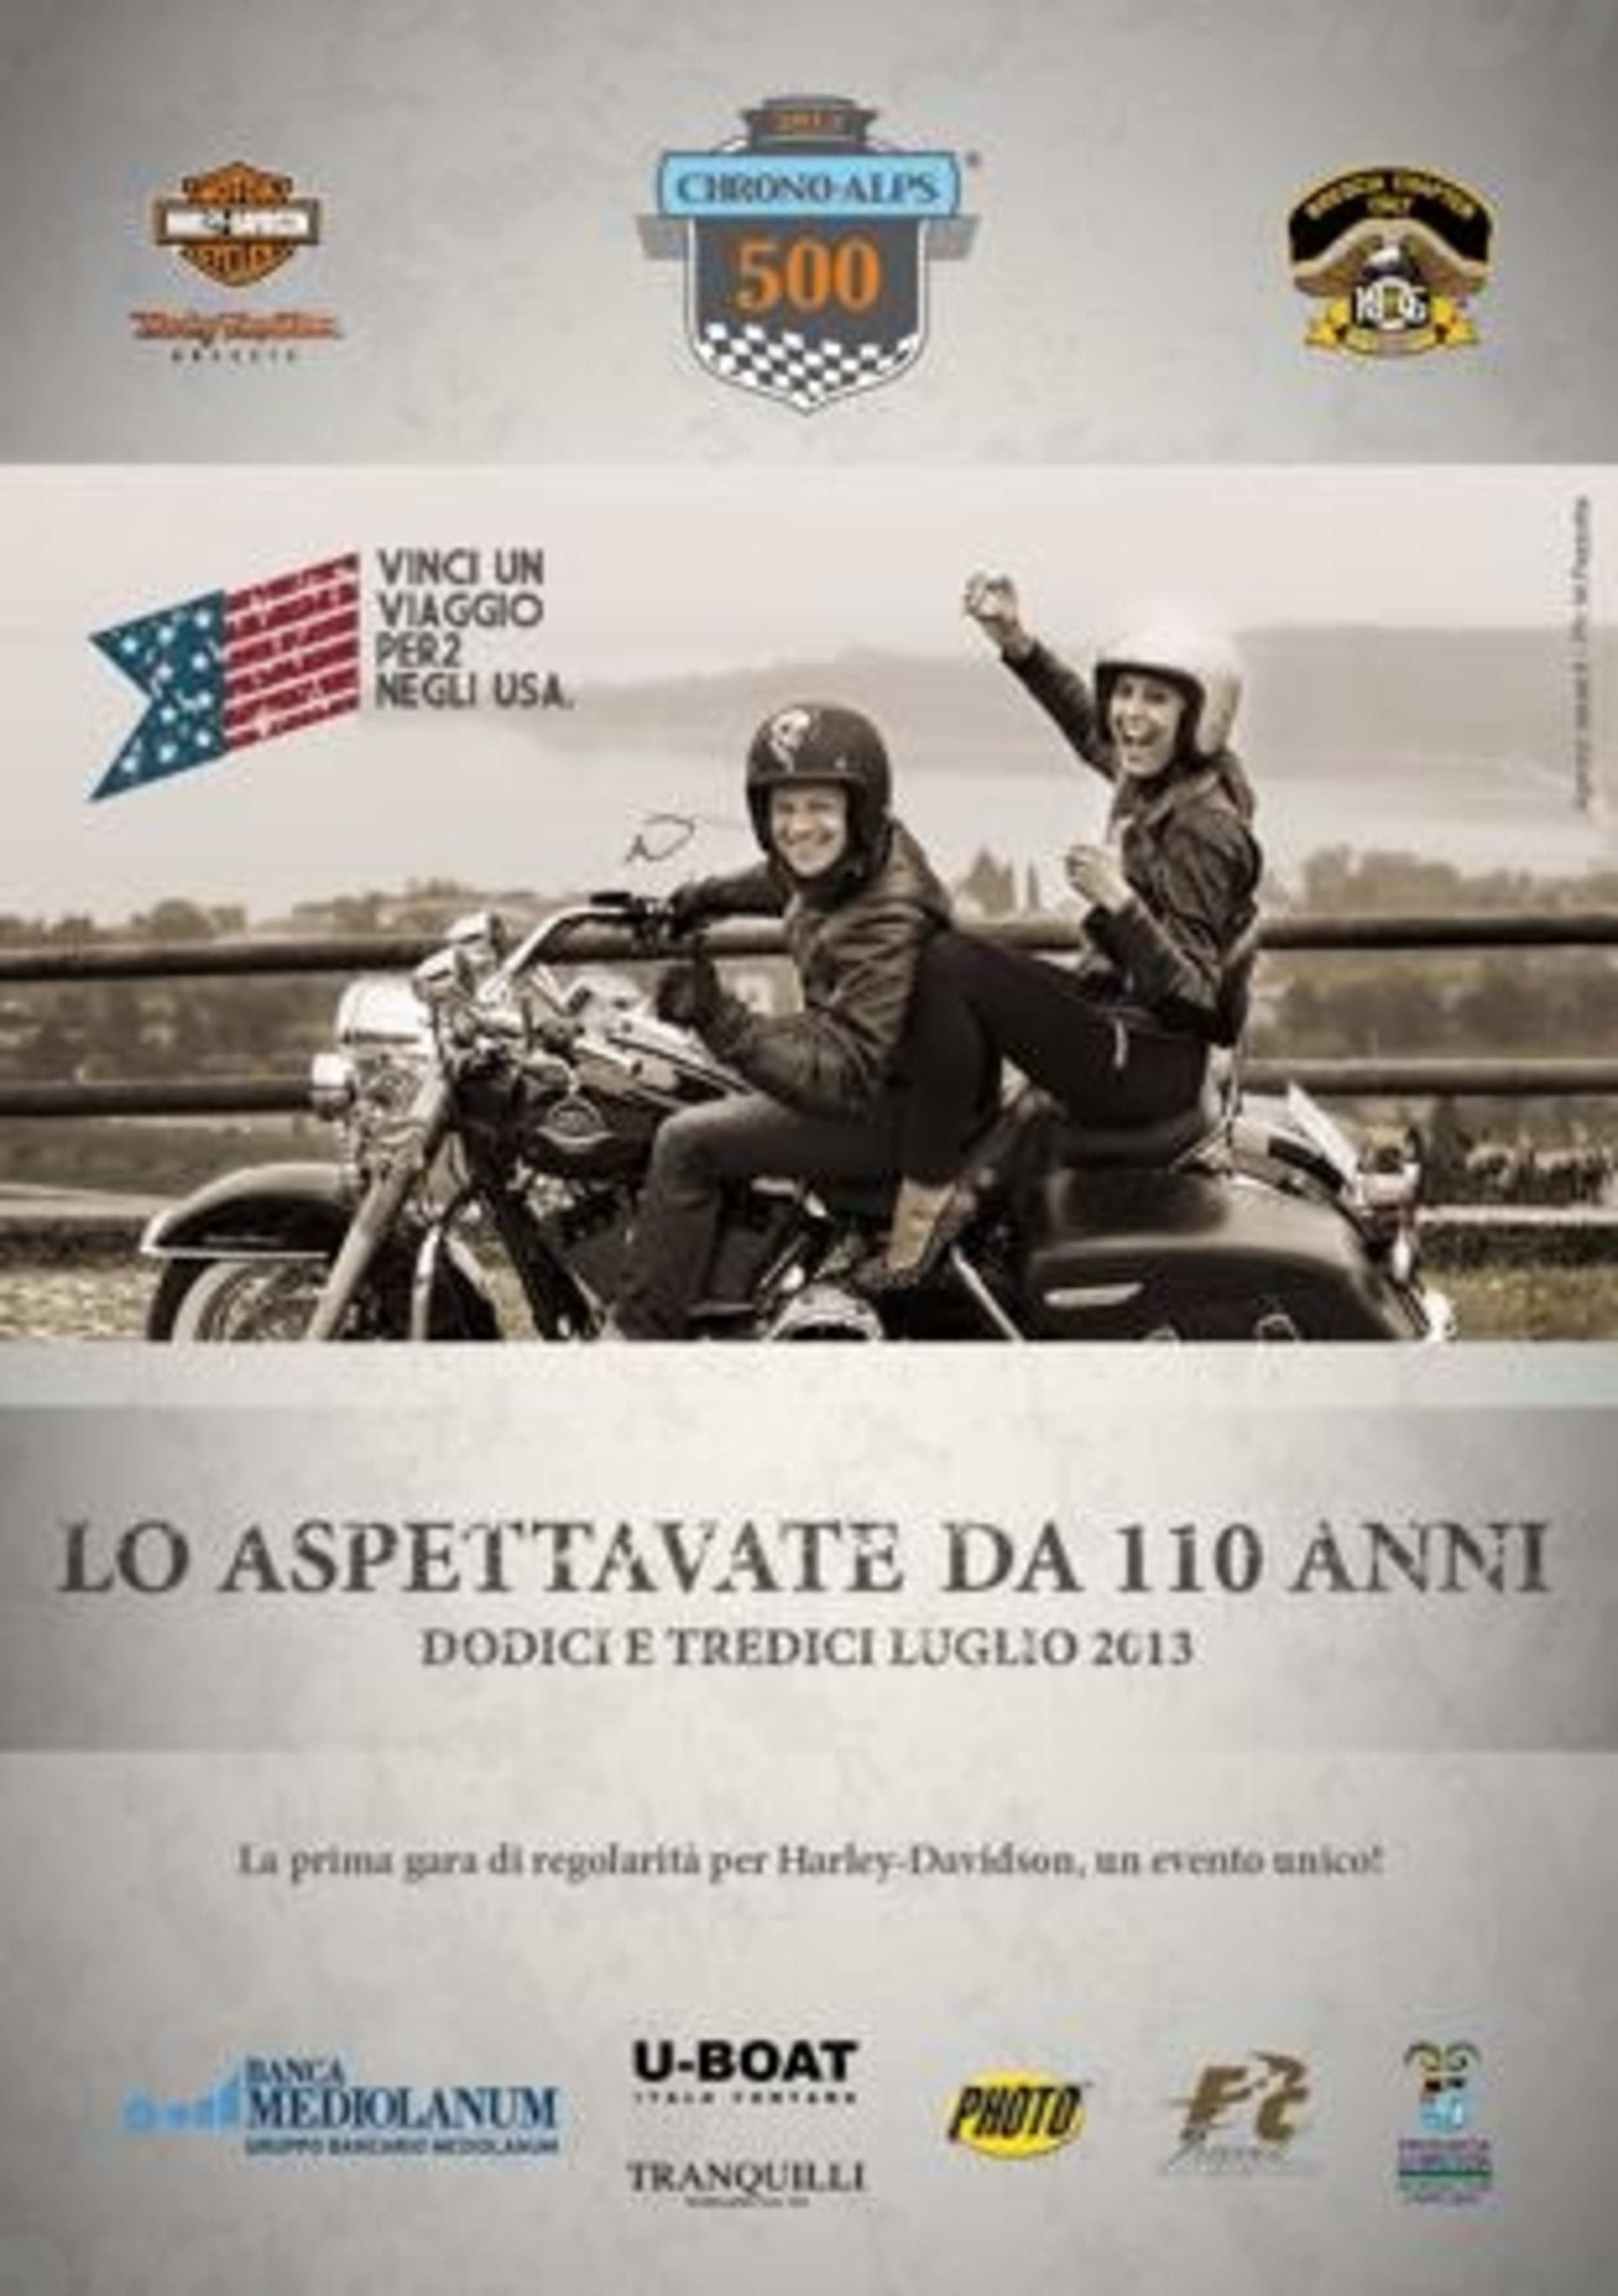 Harley-Davidson Chrono Alps 500: gara di regolarit&agrave; riservata al mito USA